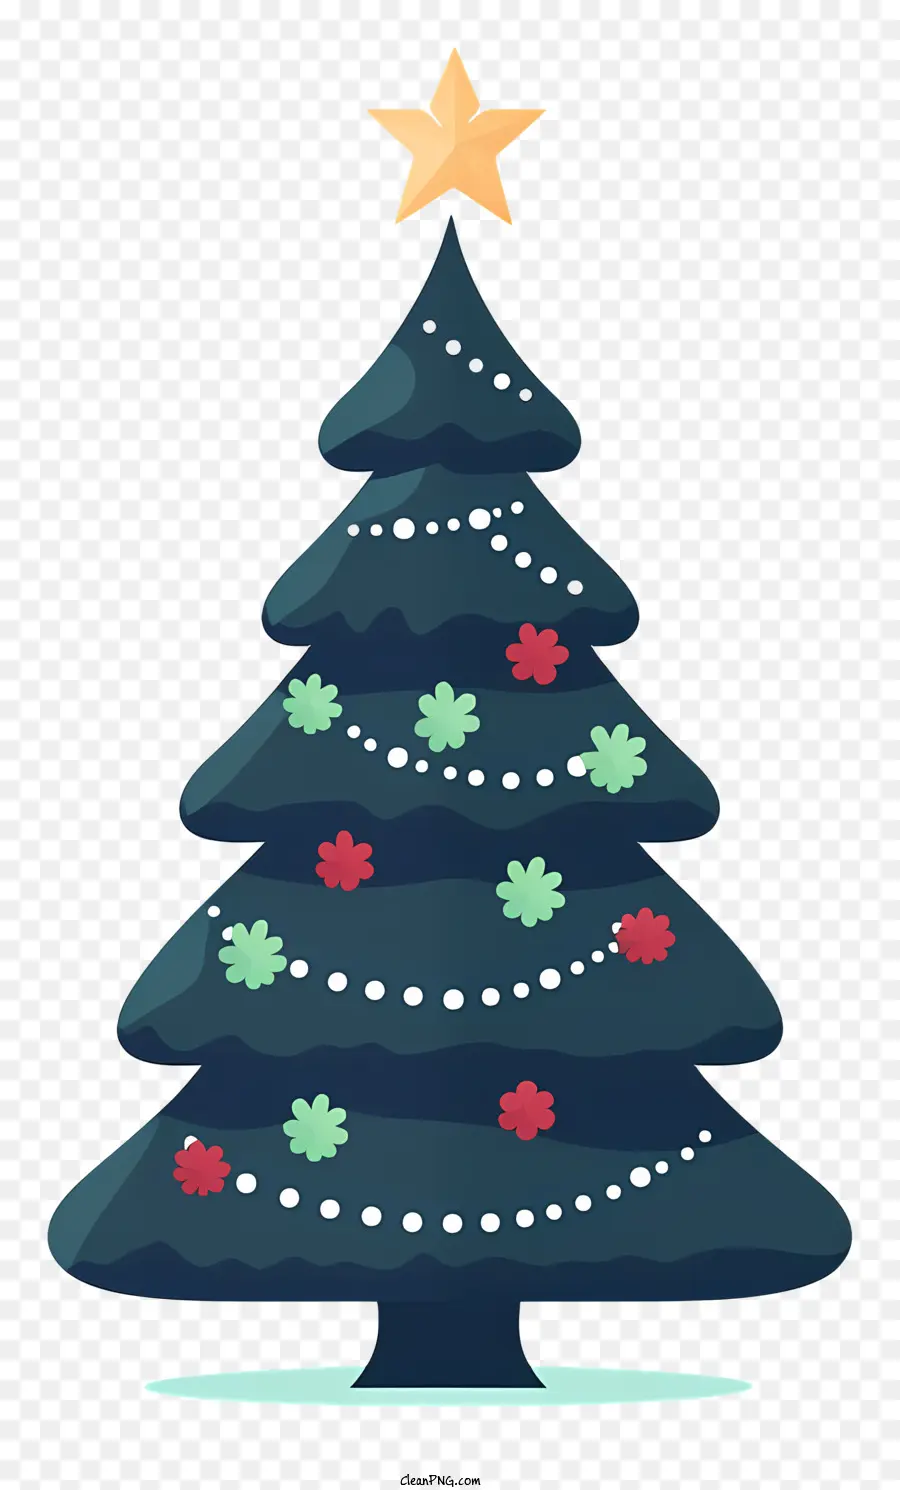 Weihnachtsbaum - Blauer Weihnachtsbaum mit Sternen und Glocken